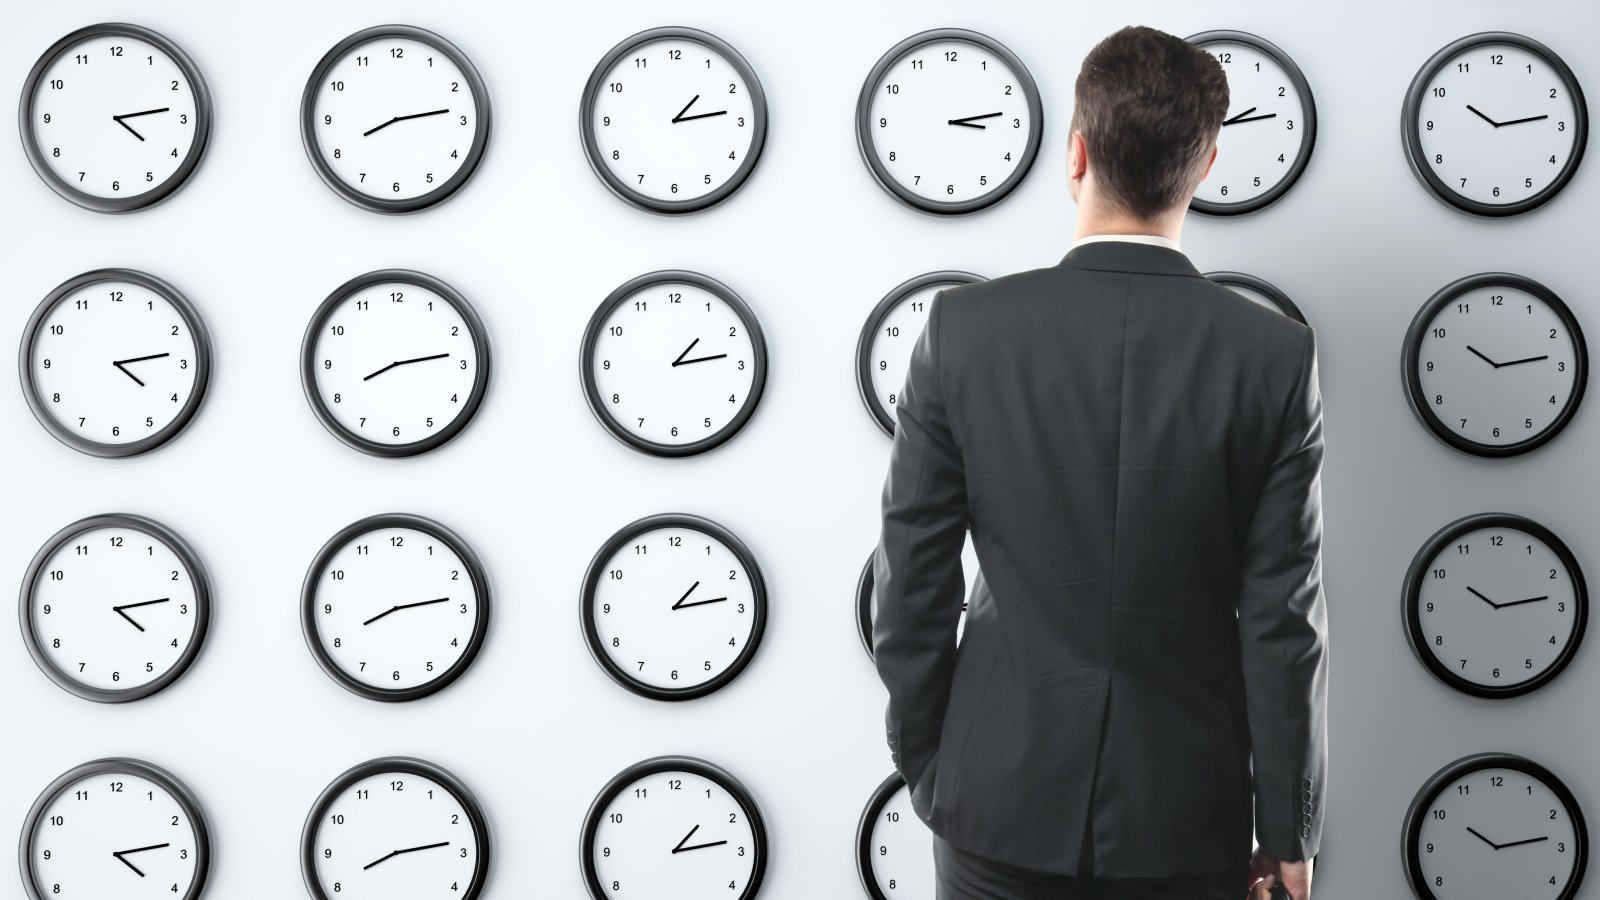 
                        15 nguyên tắc quản lý thời gian hiệu quả giúp tối ưu hóa năng suất làm việc
                     1